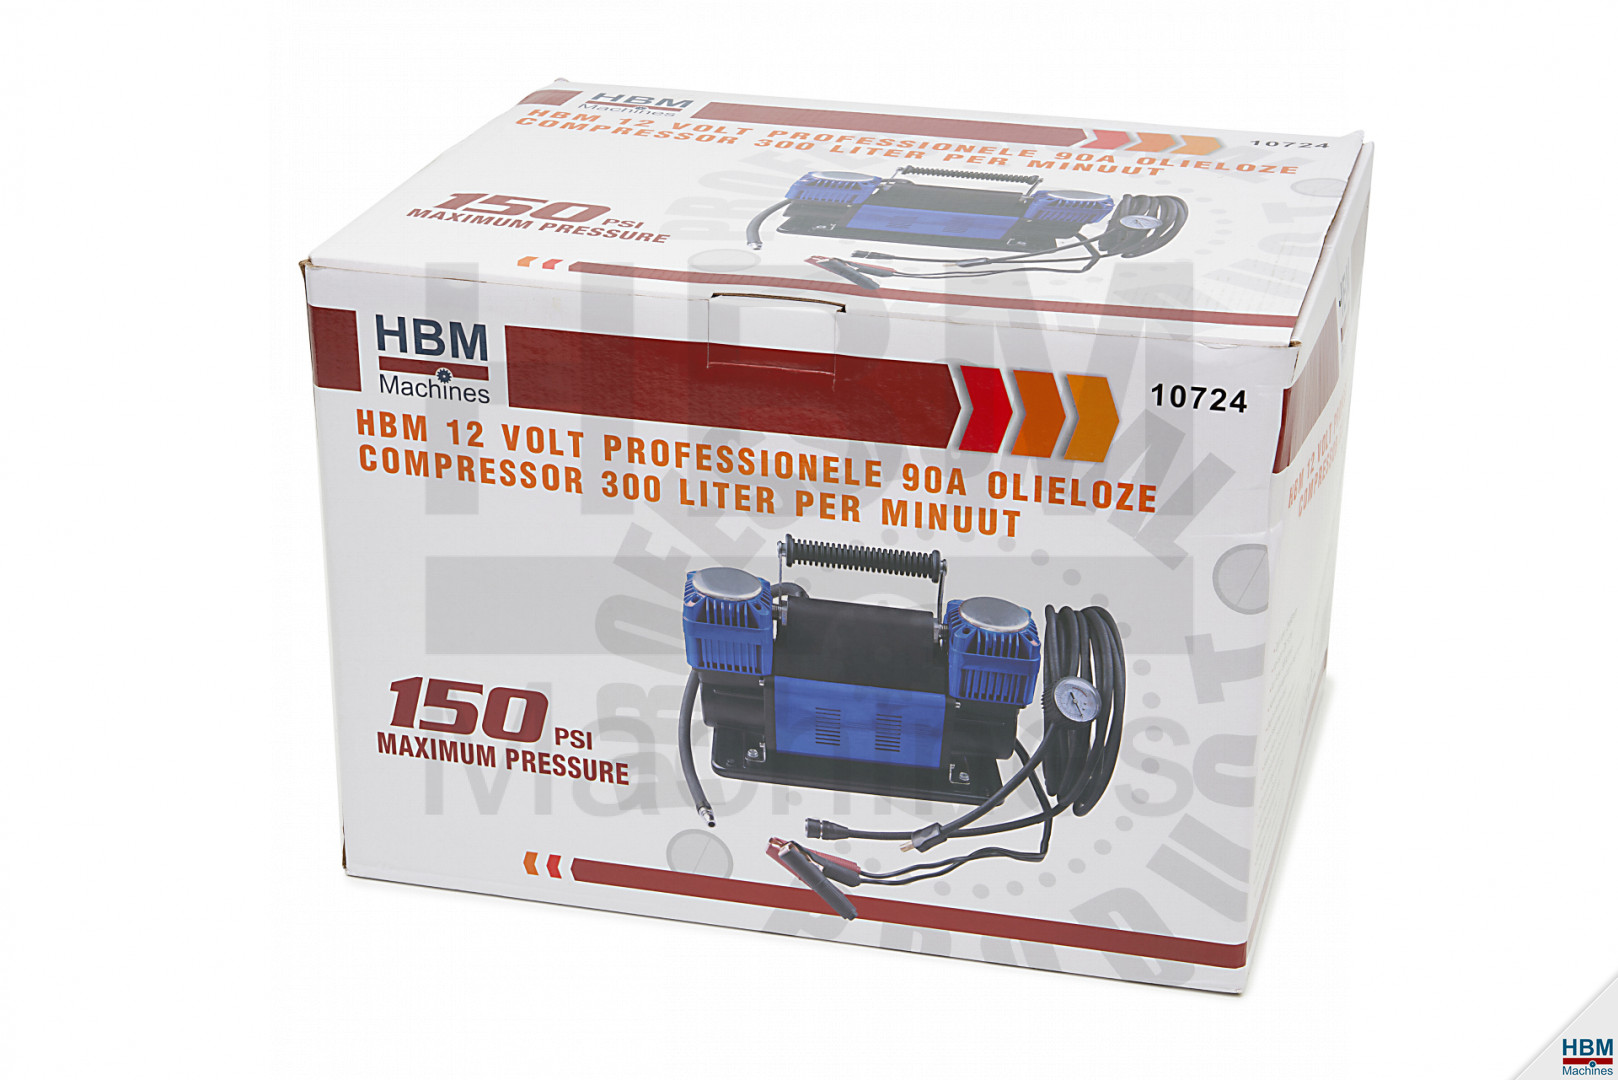 HBM Compresseur sans huile professionnel 12 V 45 A 160 litres par minute